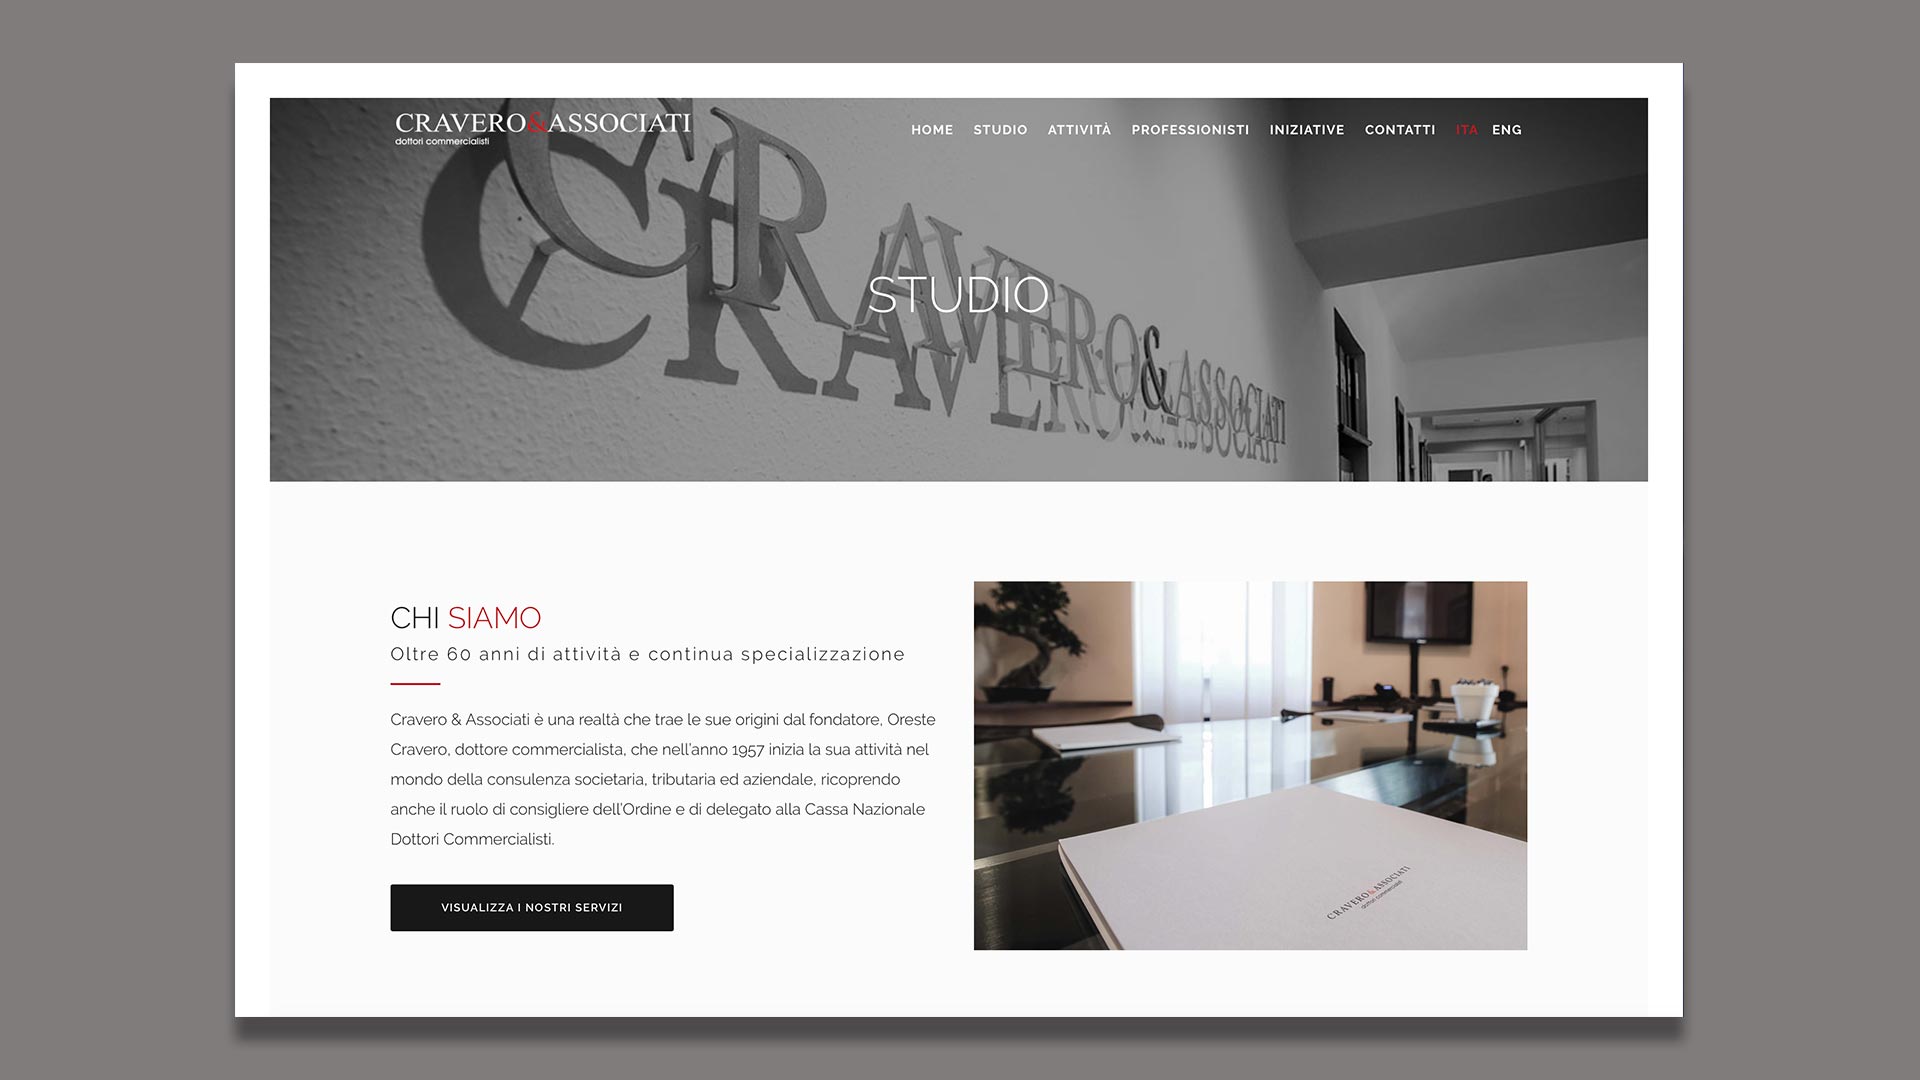 Sito Web di Cravero & Associati realizzato da OrangePix a Biella